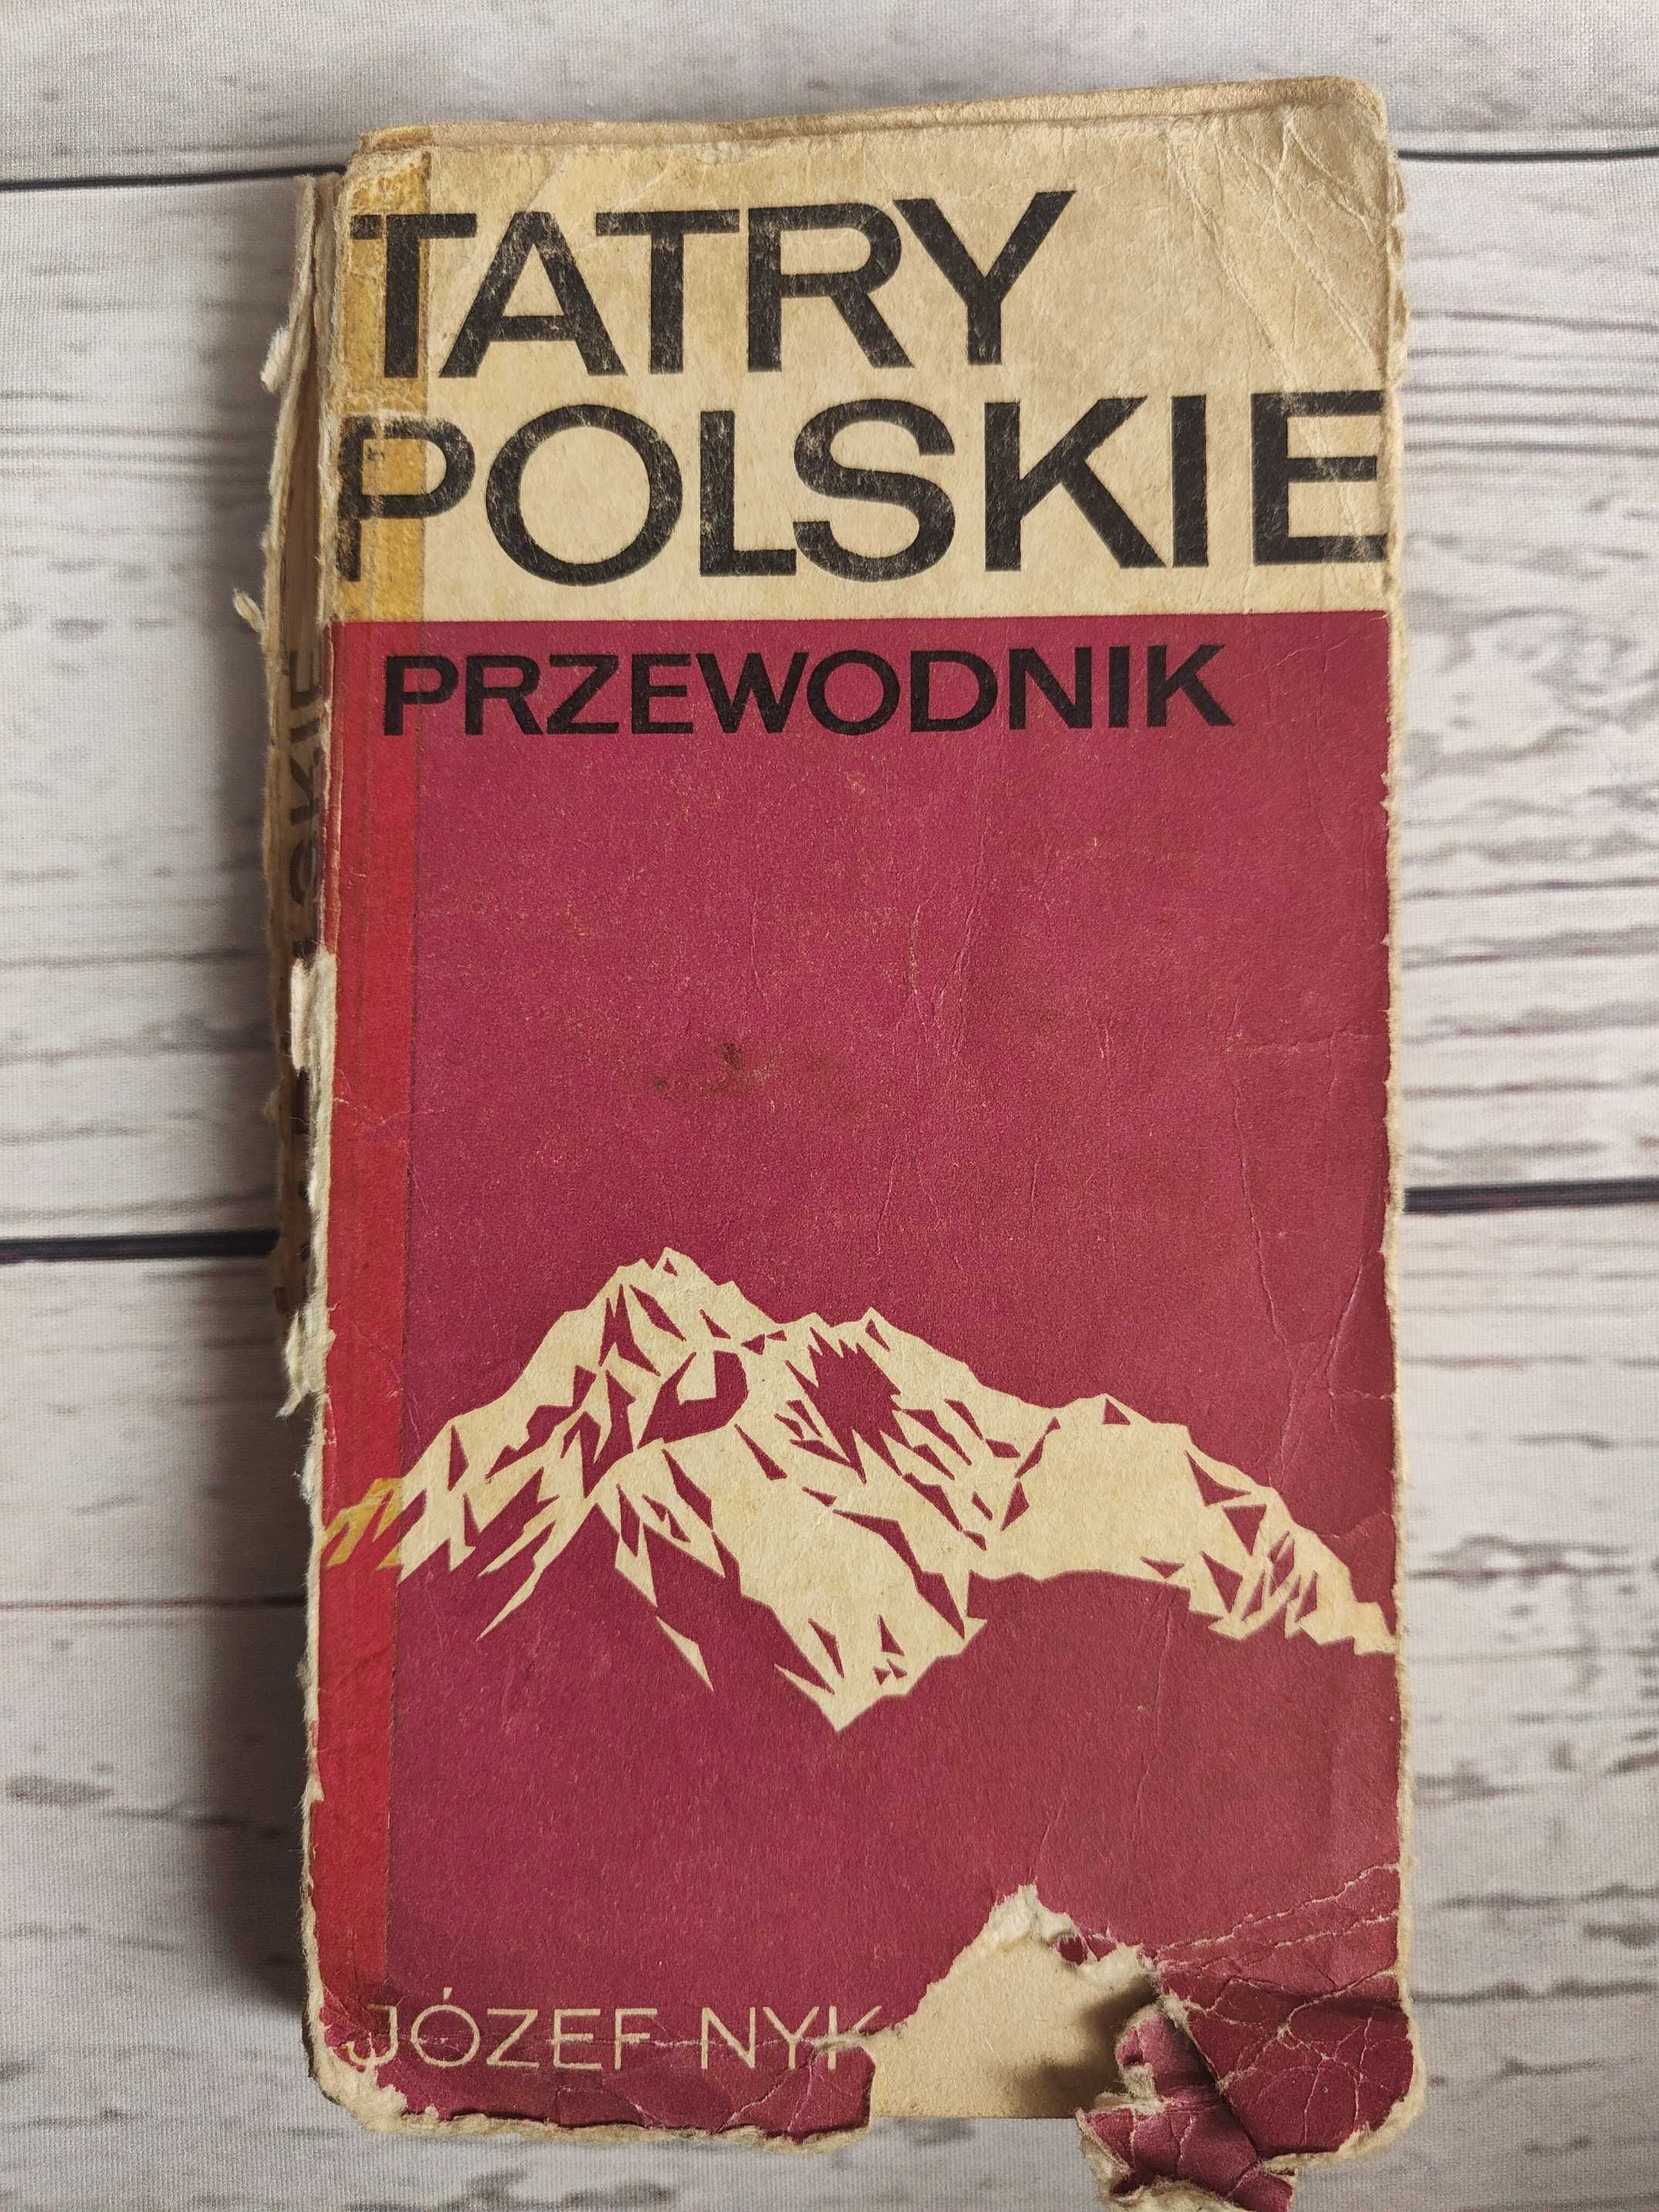 TATRY POLSKIE przewodnik Józef Nyka 1973